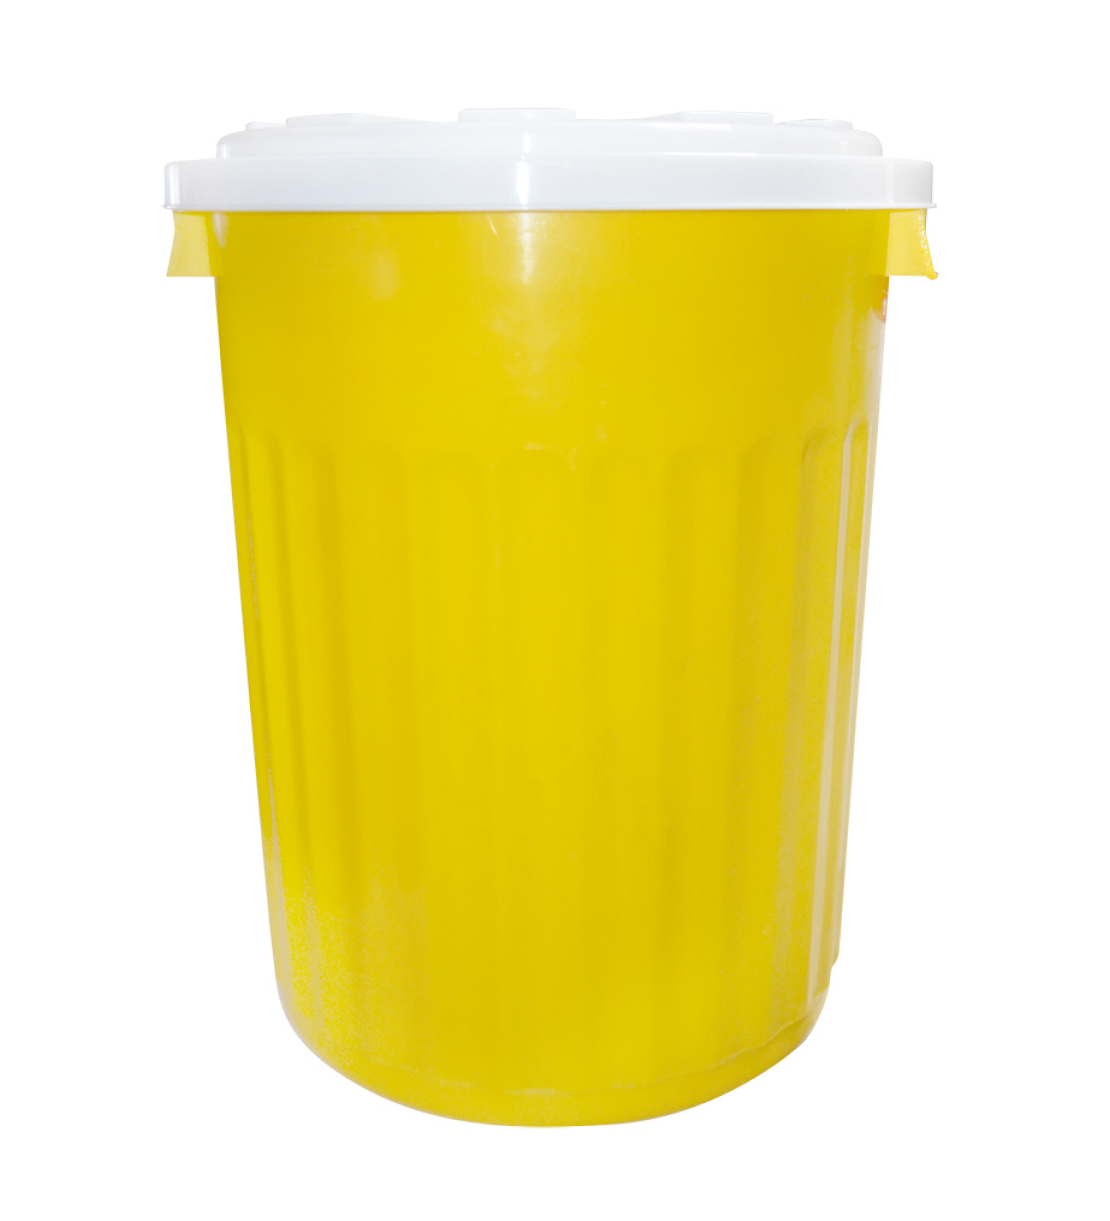 Бак пластиковый с крышкой 35 литров. Крышка бака обеспечивает герметичность и предотвращает попадание пыли, грязи и насекомых внутрь